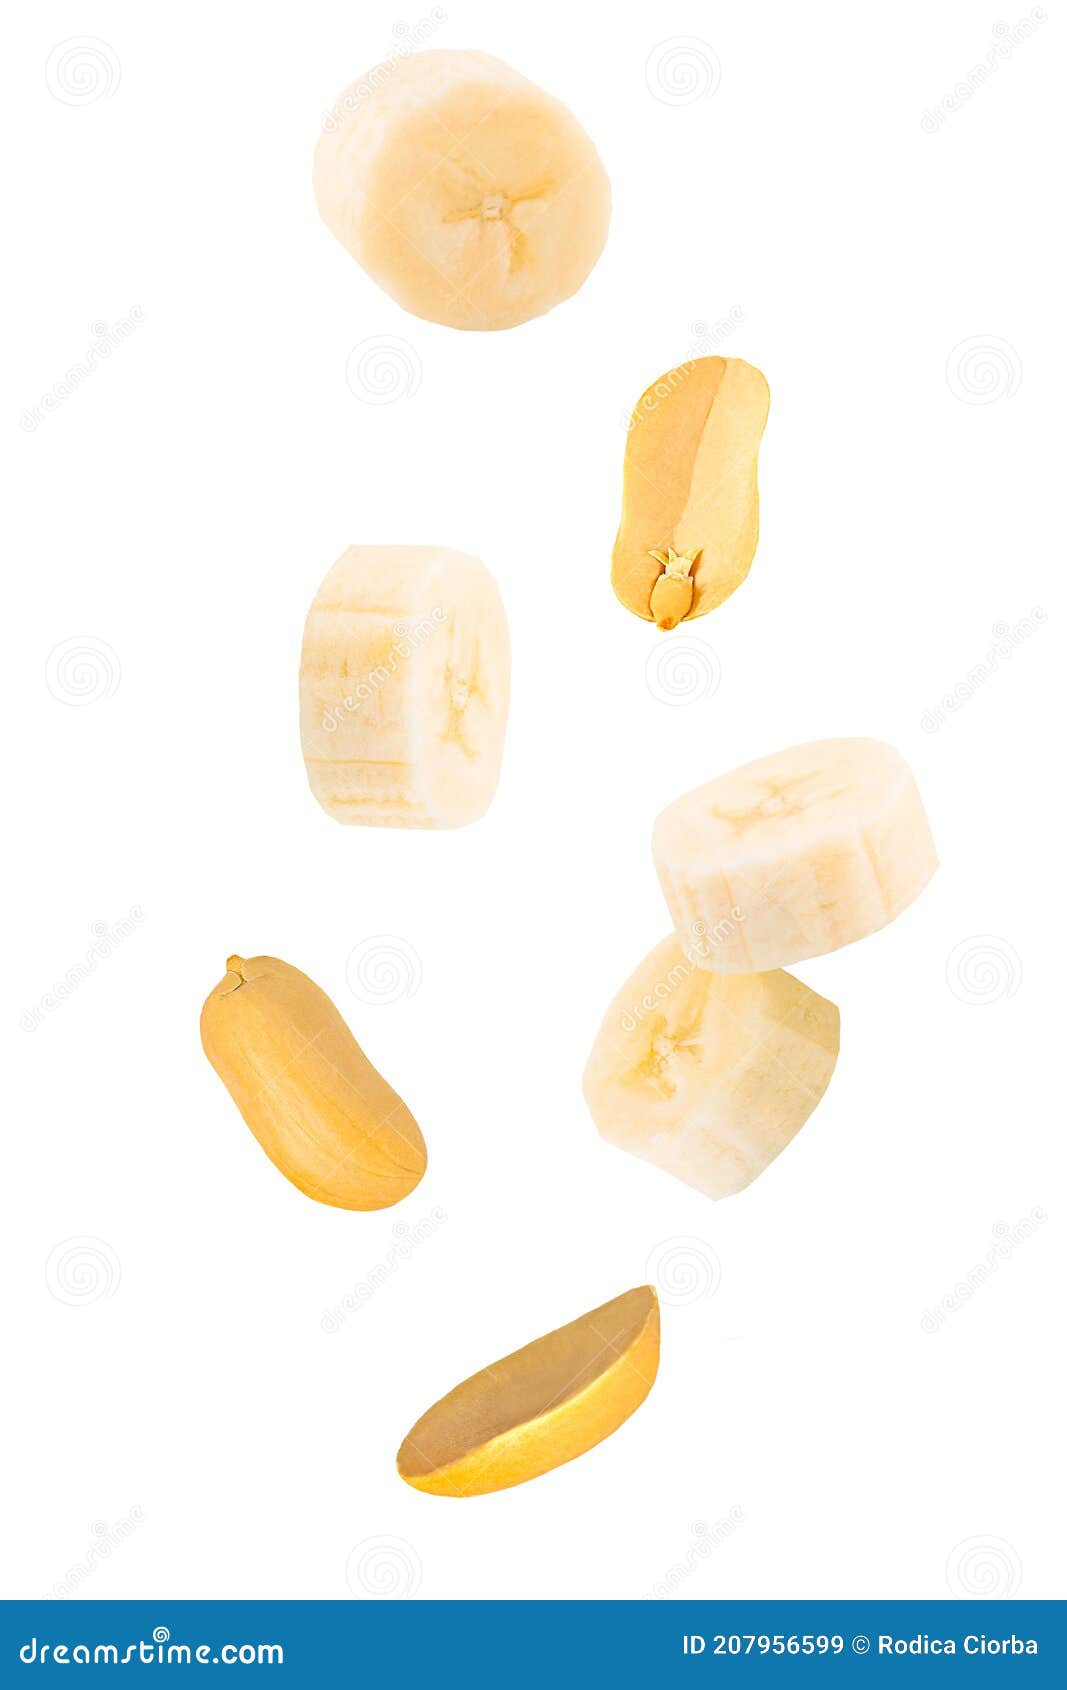 Conjunto de frutos secos sobre un fondo blanco